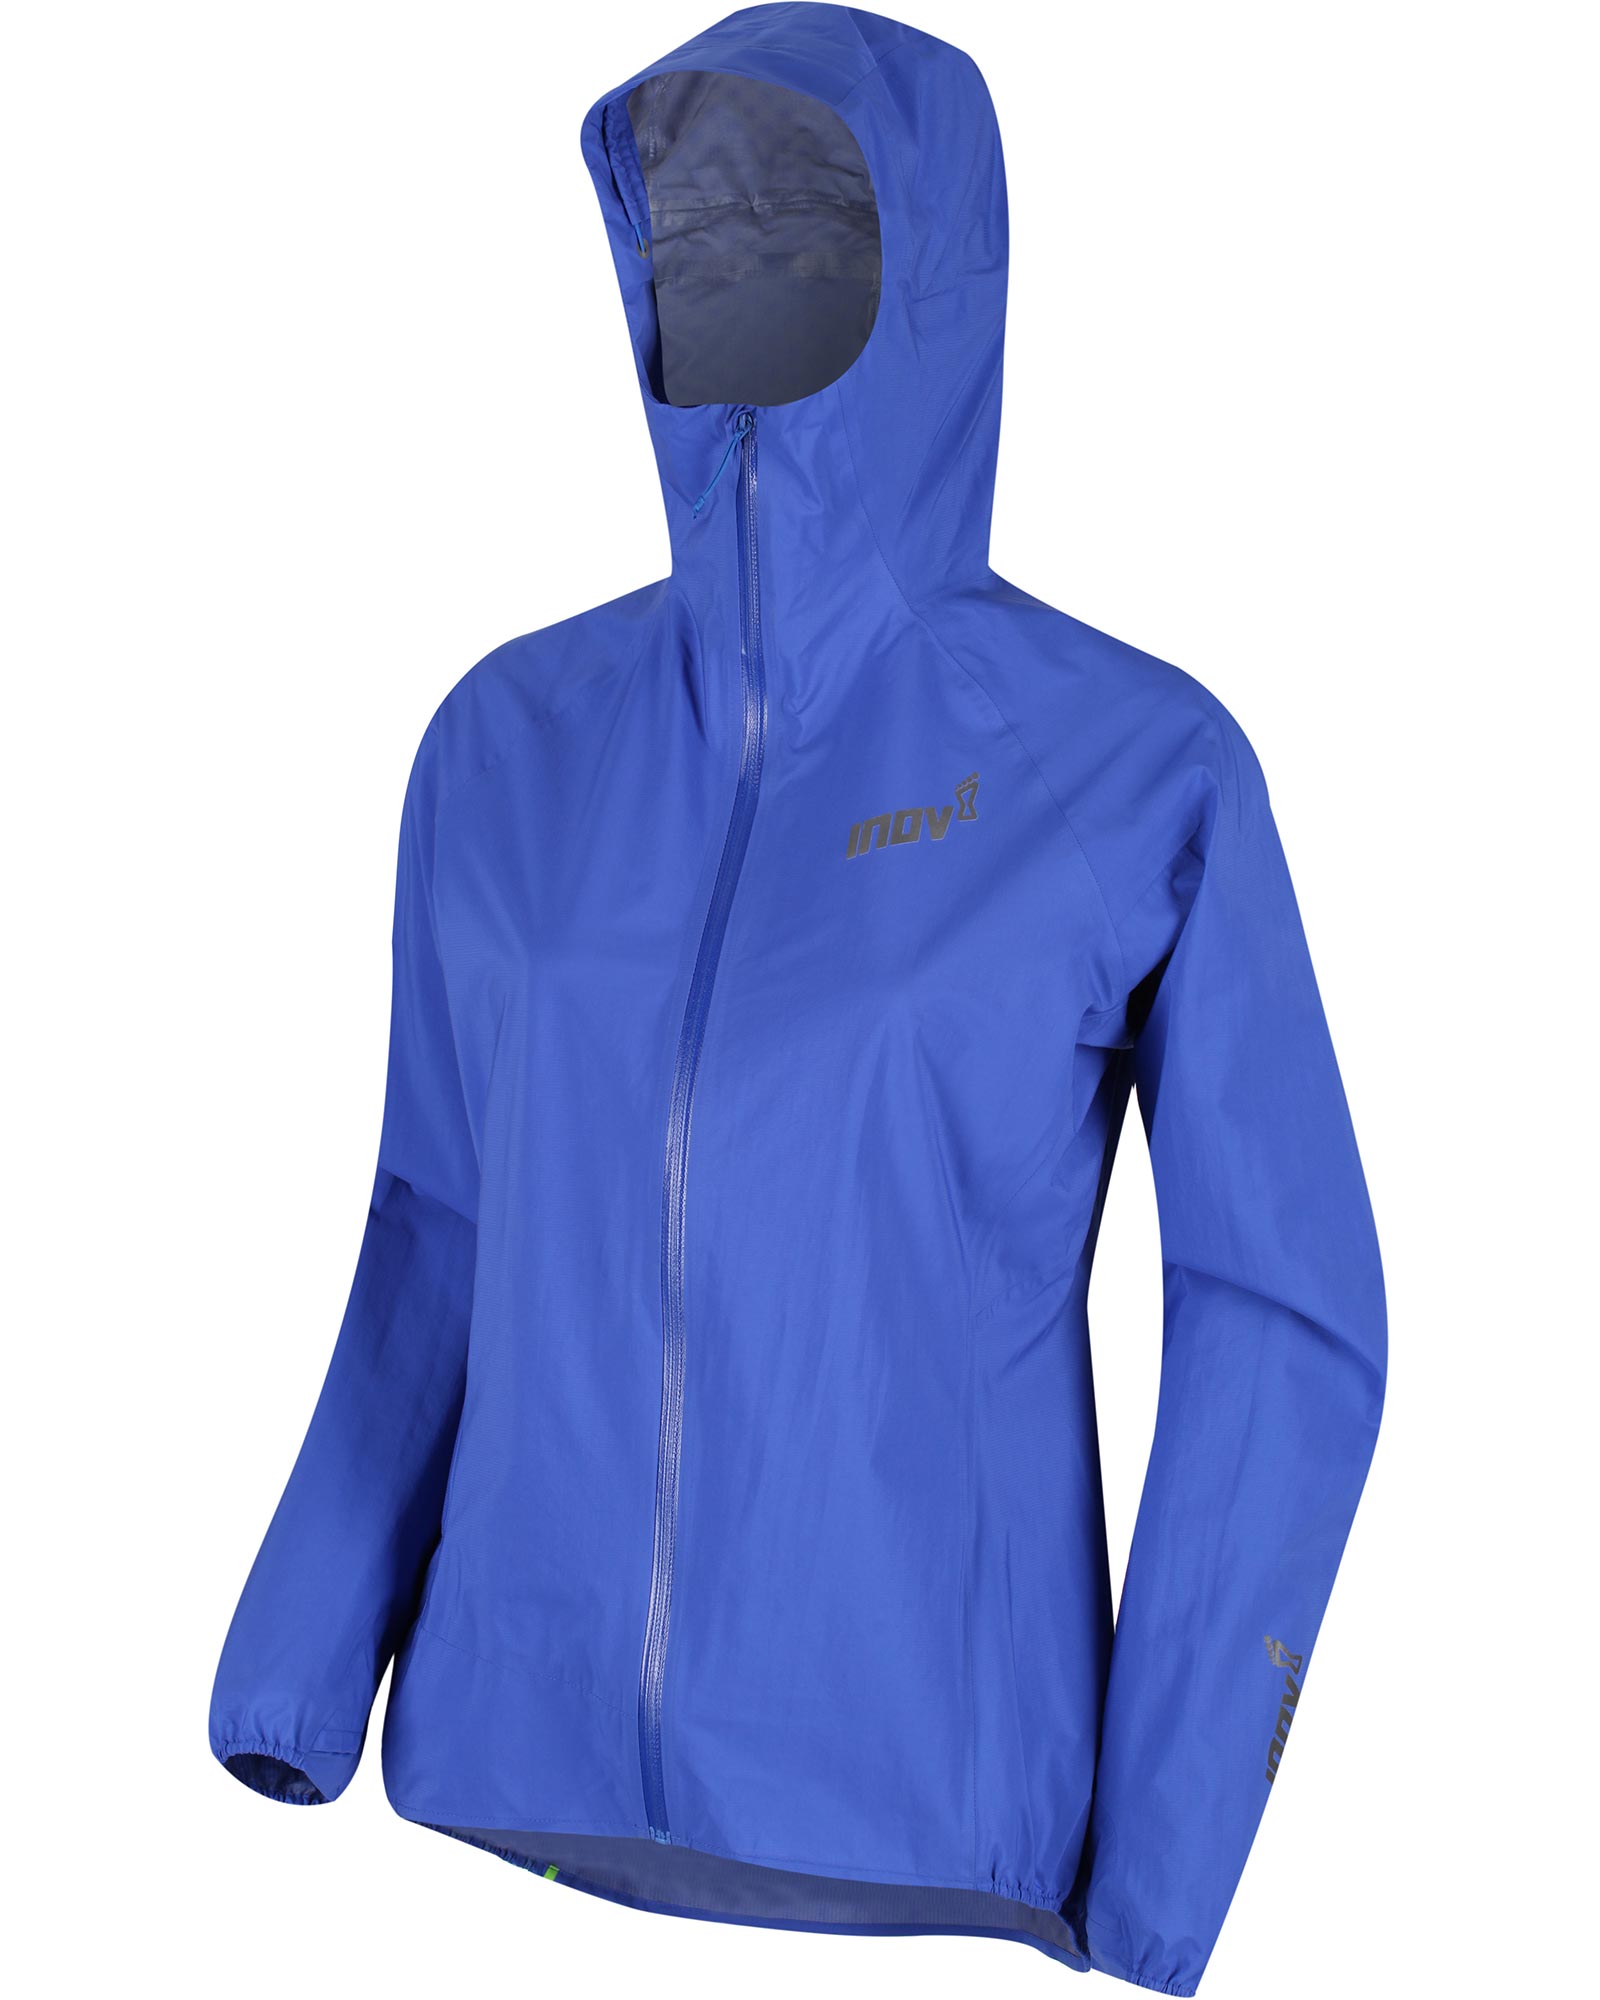 Inov 8 Full Zip Stormshell Women’s Jacket - Blue 10